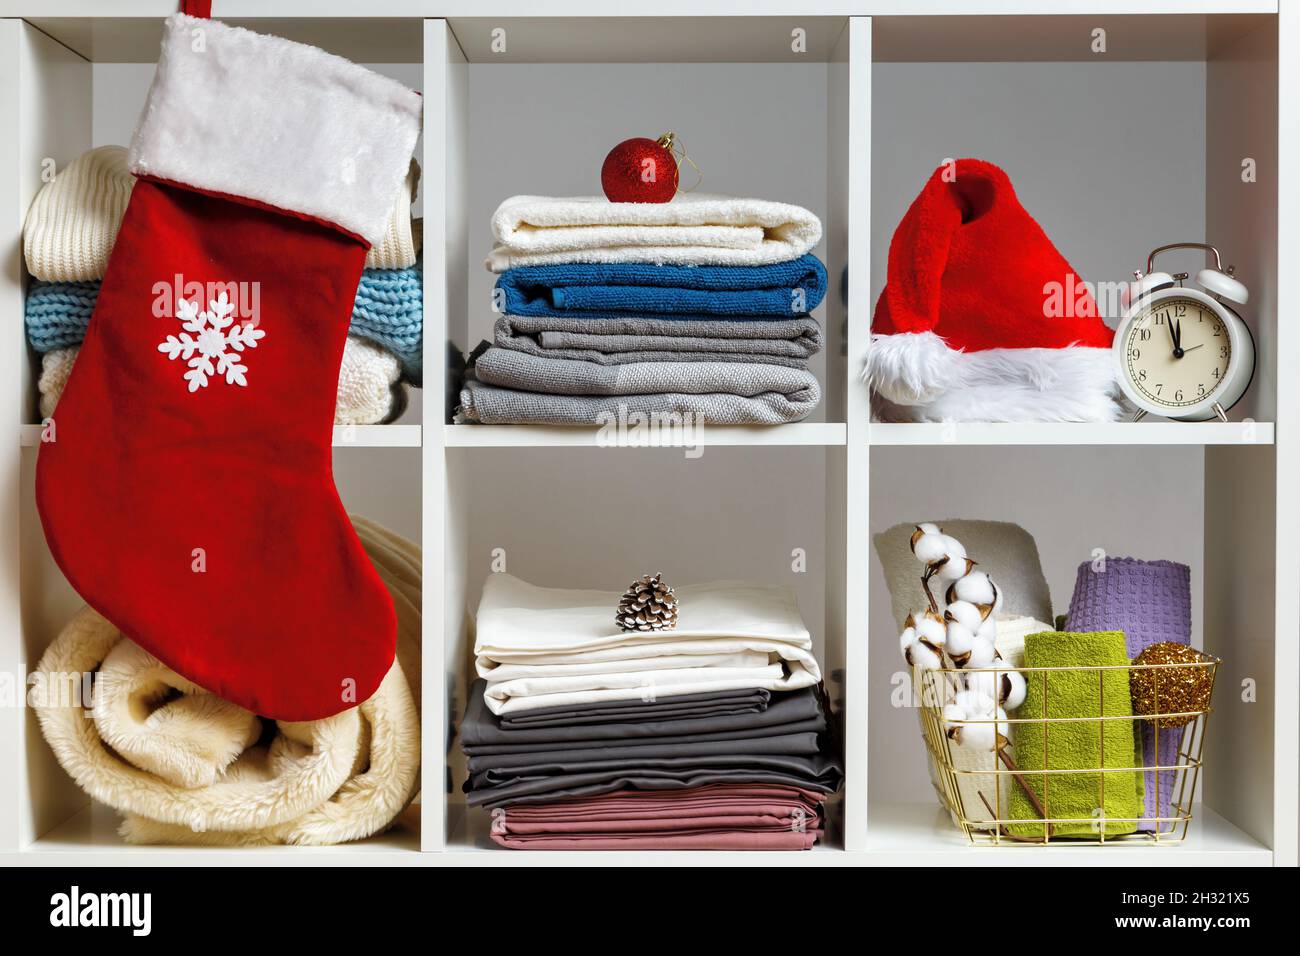 Organisation du stockage.Le linge de lit, les serviettes, les draps, les couvertures sur les étagères sont décorés pour célébrer Noël et le nouvel an. Banque D'Images